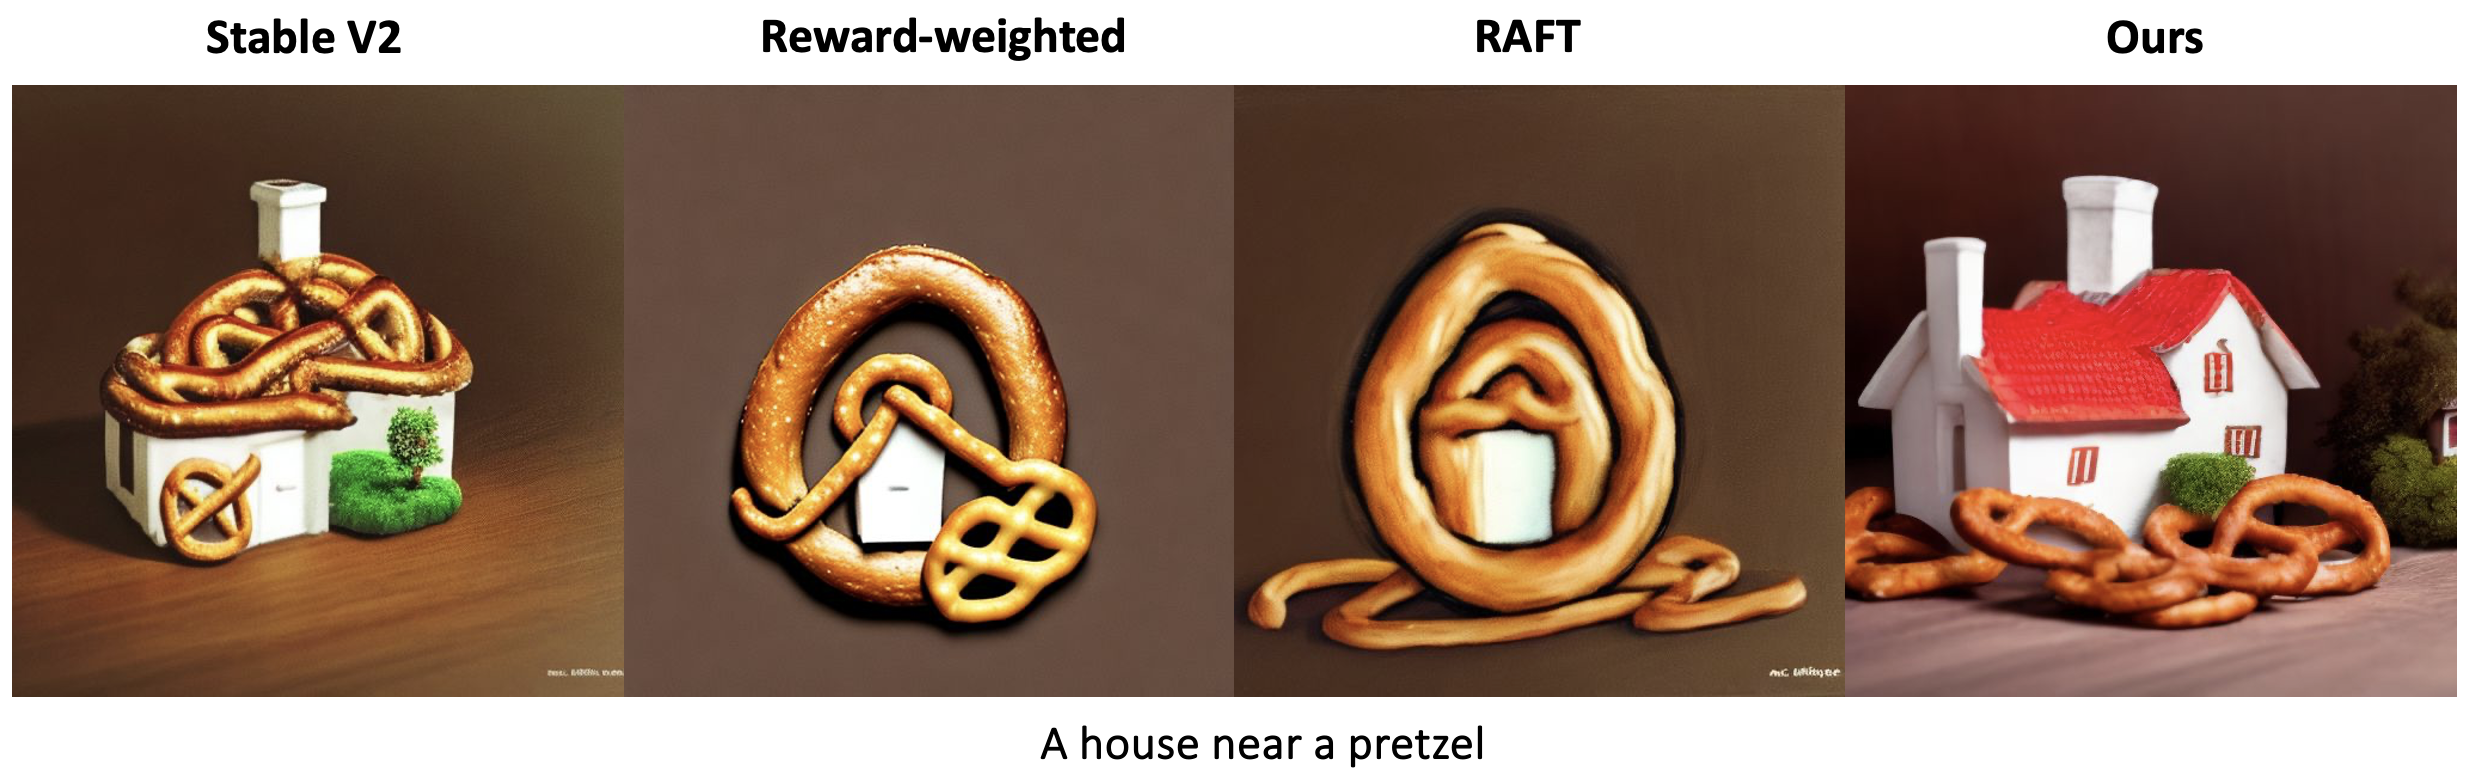 A house near a pretzel